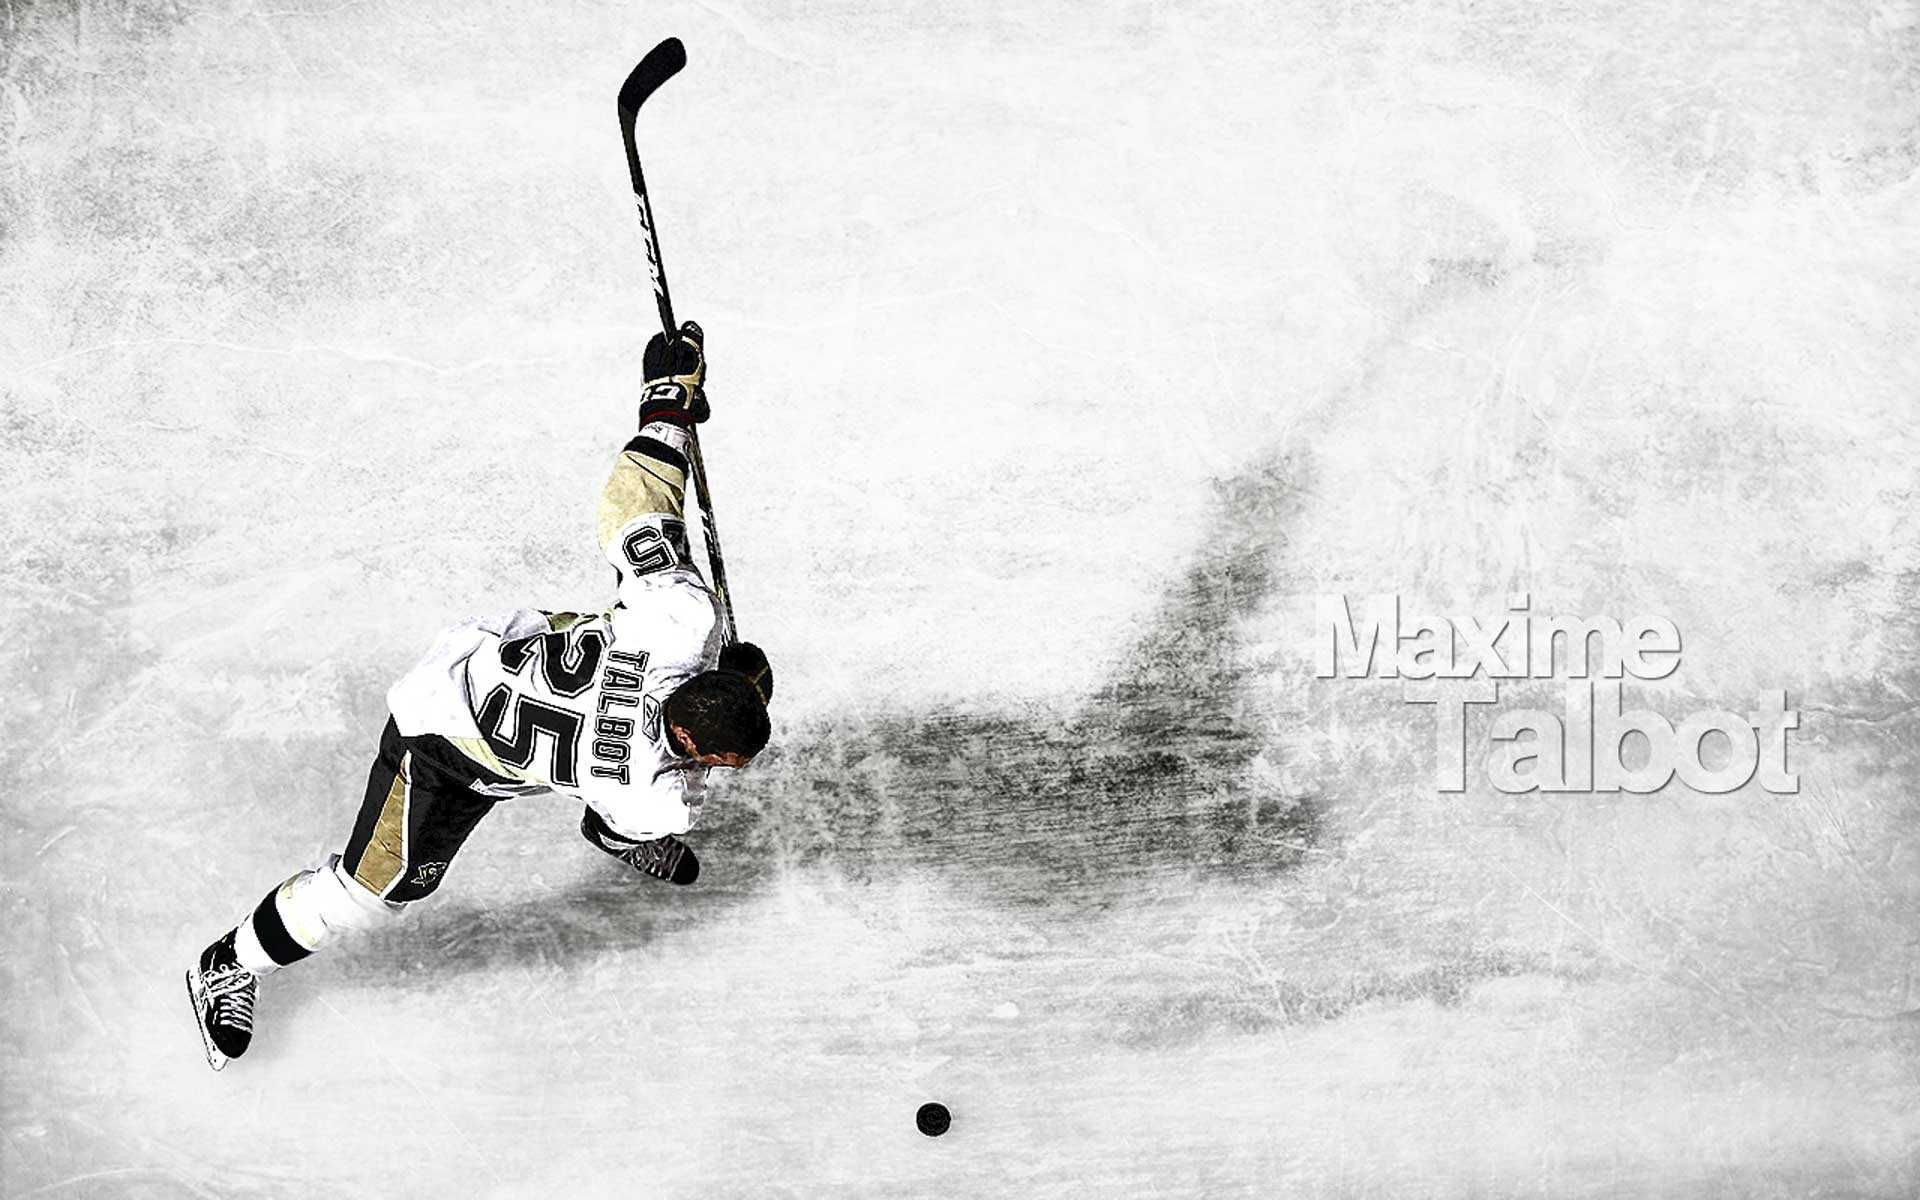 Hockey Wallpaper Images - Free Download on Freepik